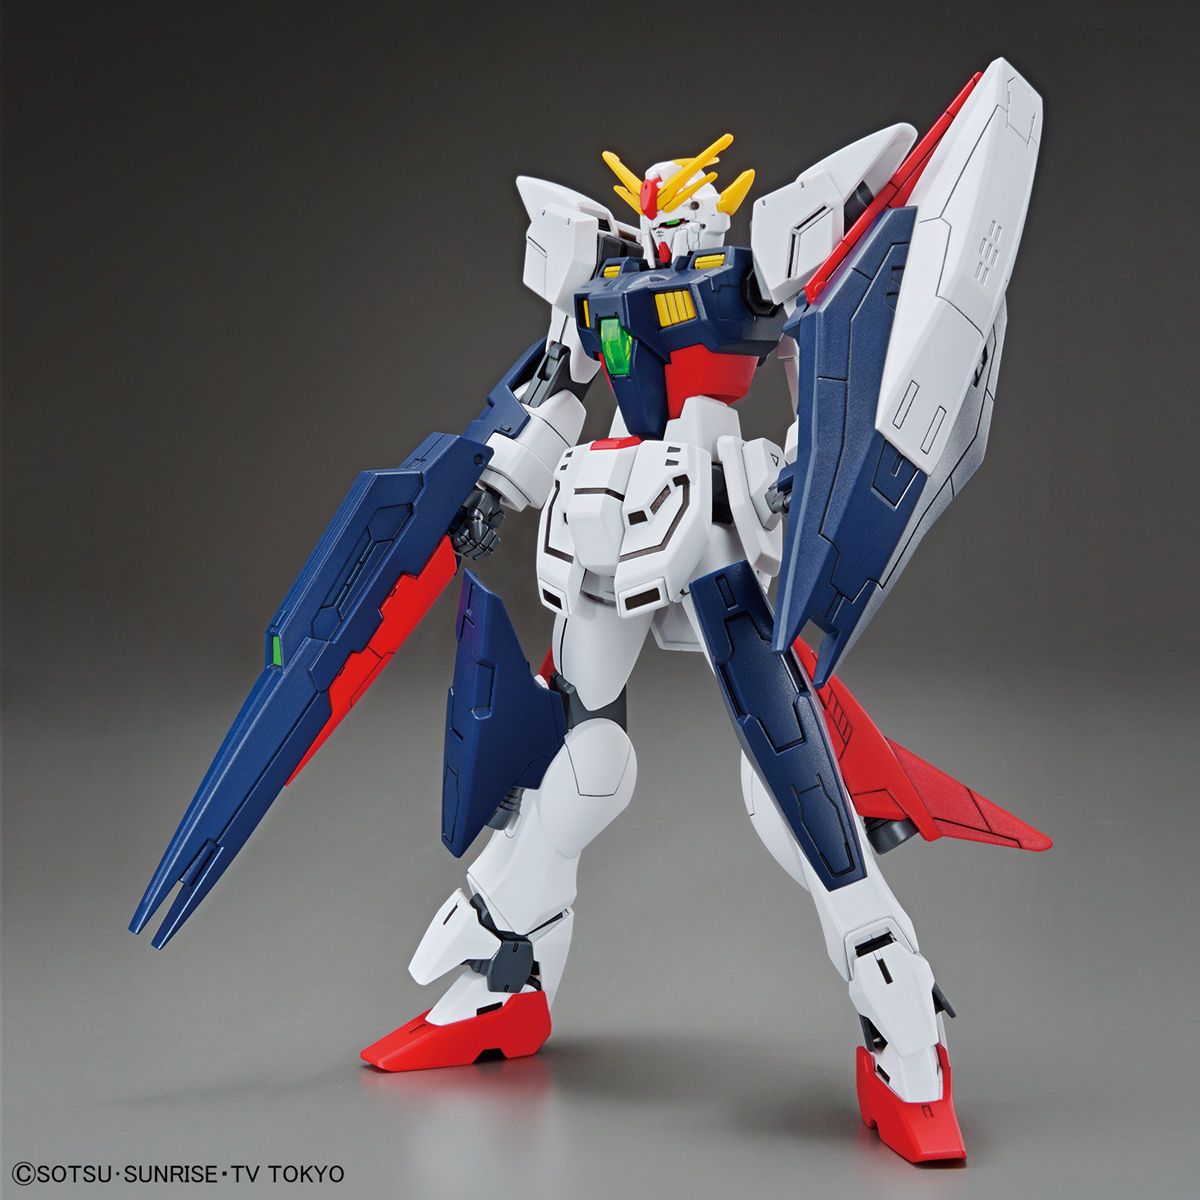 HGBD - GF13-017NJ/B Gundam Shining Break